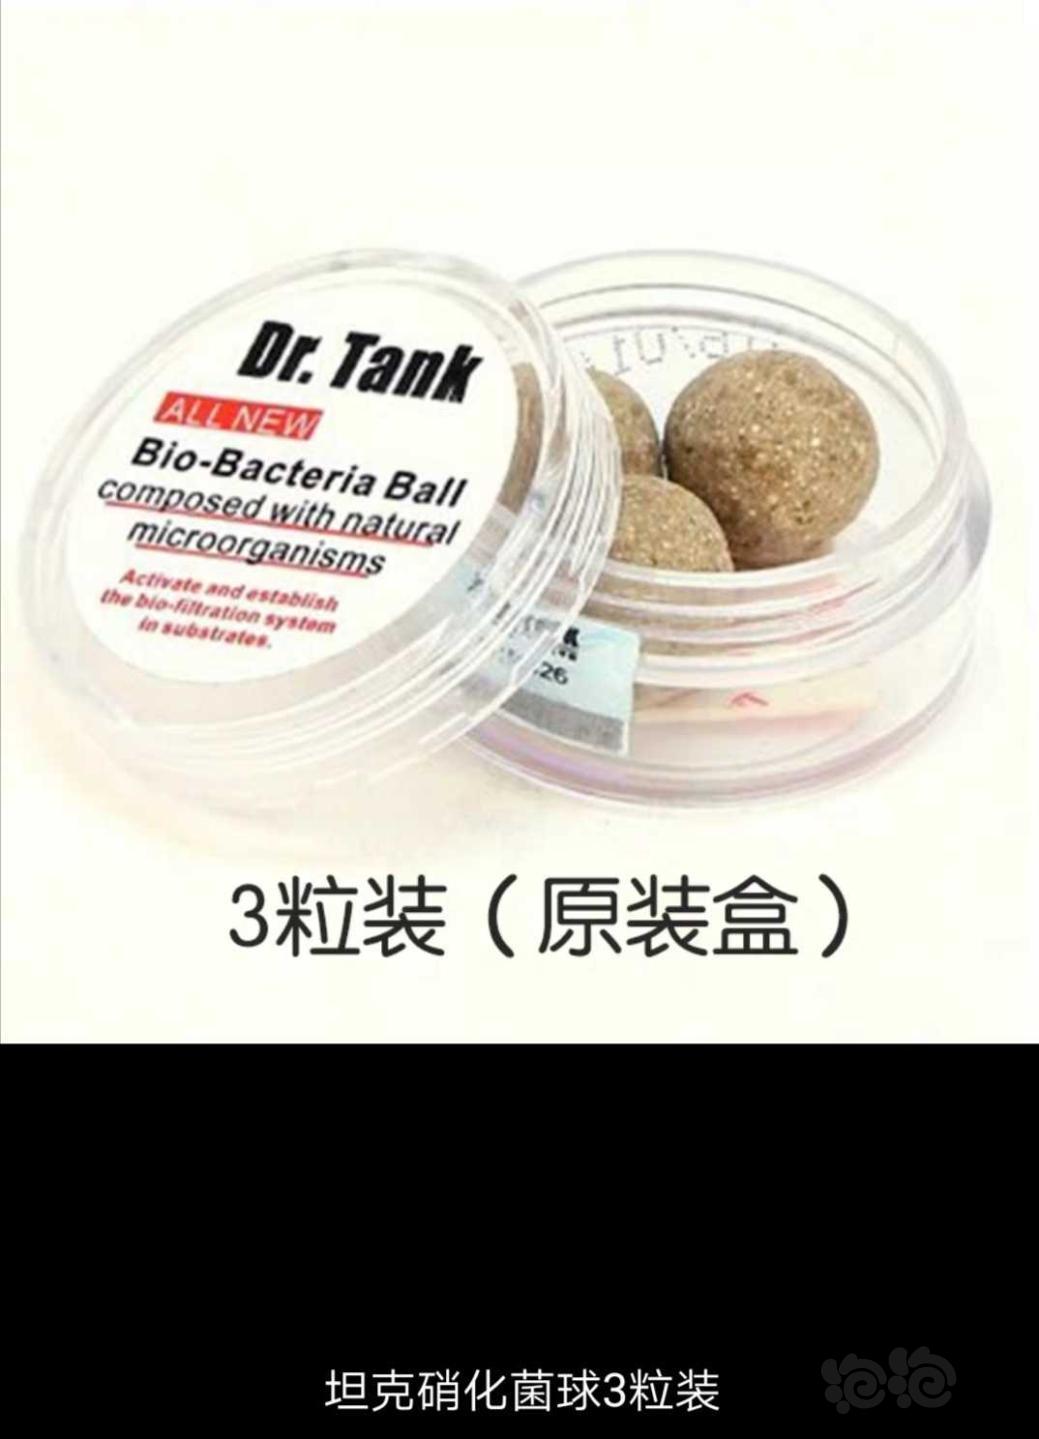 【用品】2019-11-13#RMB拍卖坦克二代硝化细菌球三粒装*3盒-图2